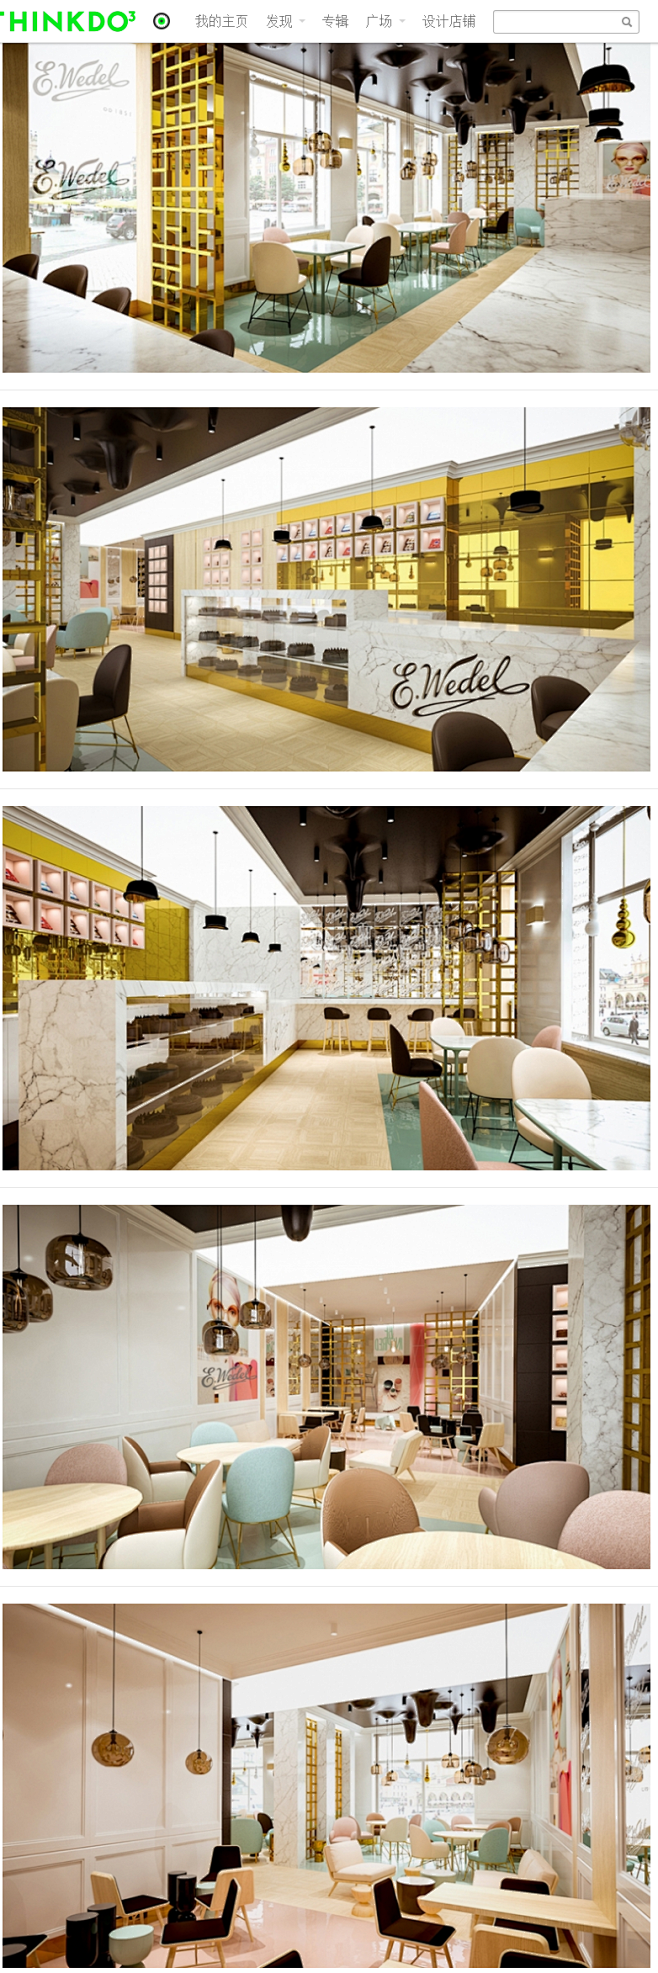 cafe wedel咖啡馆室内设计//l...